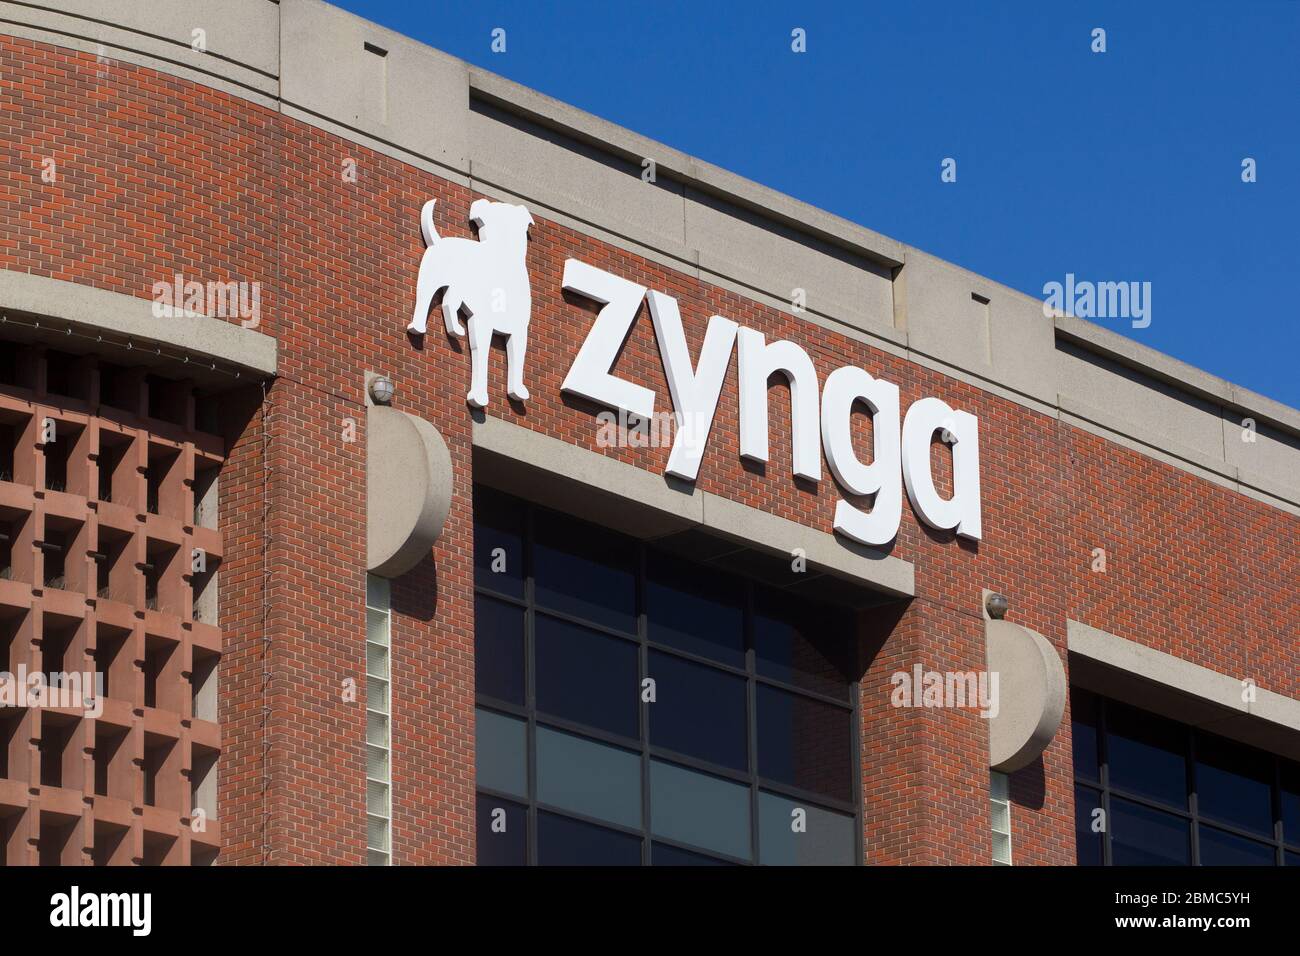 Il logo Zynga è visibile presso la sede centrale di Zynga a San Francisco. Zynga Inc. È uno sviluppatore americano di giochi sociali che esegue servizi di videogiochi sociali. Foto Stock